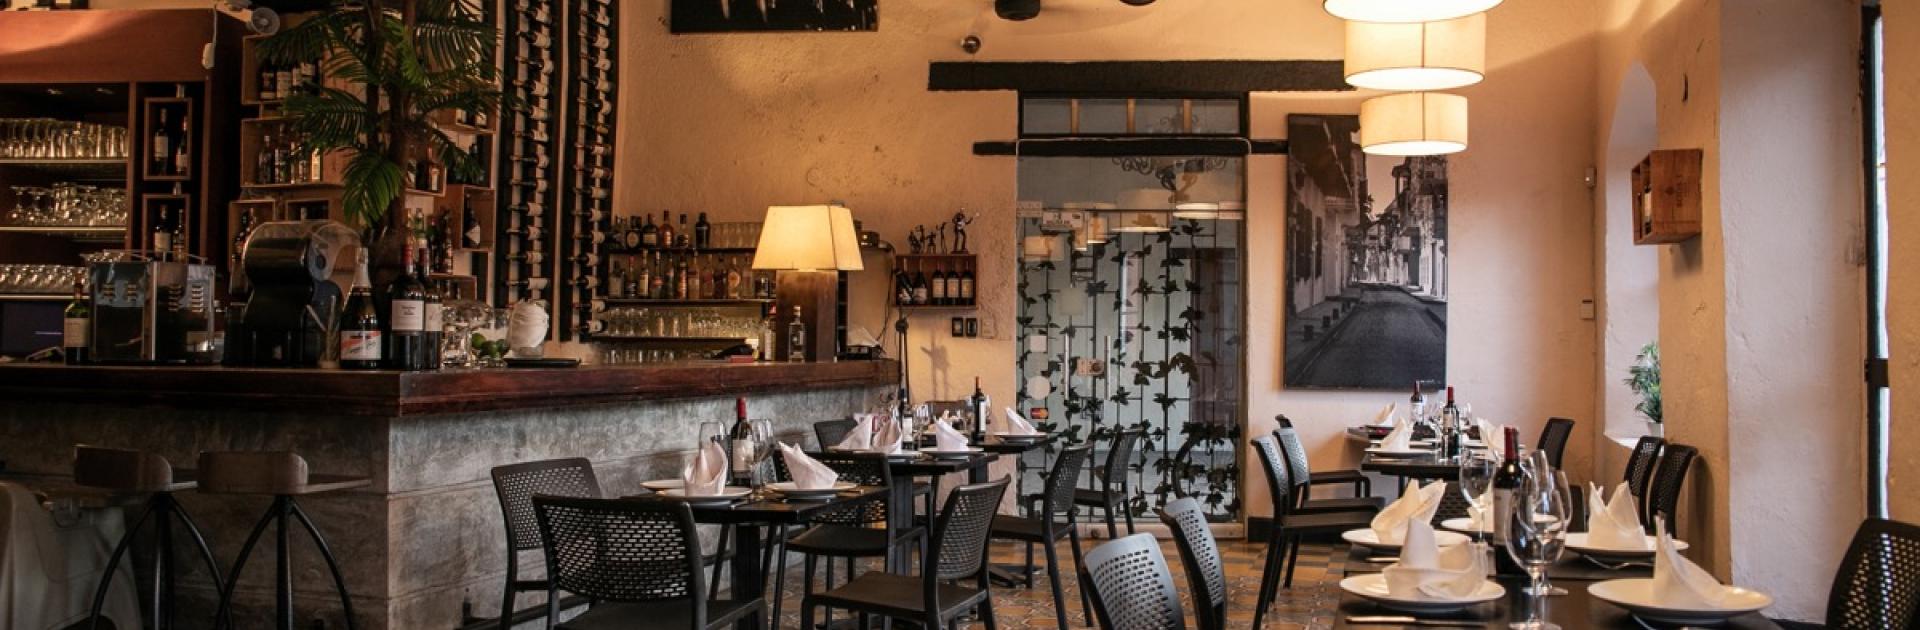 Restaurante PaloSanto, participante de Dónde Restaurant Week 2019 en Cartagena de Indias